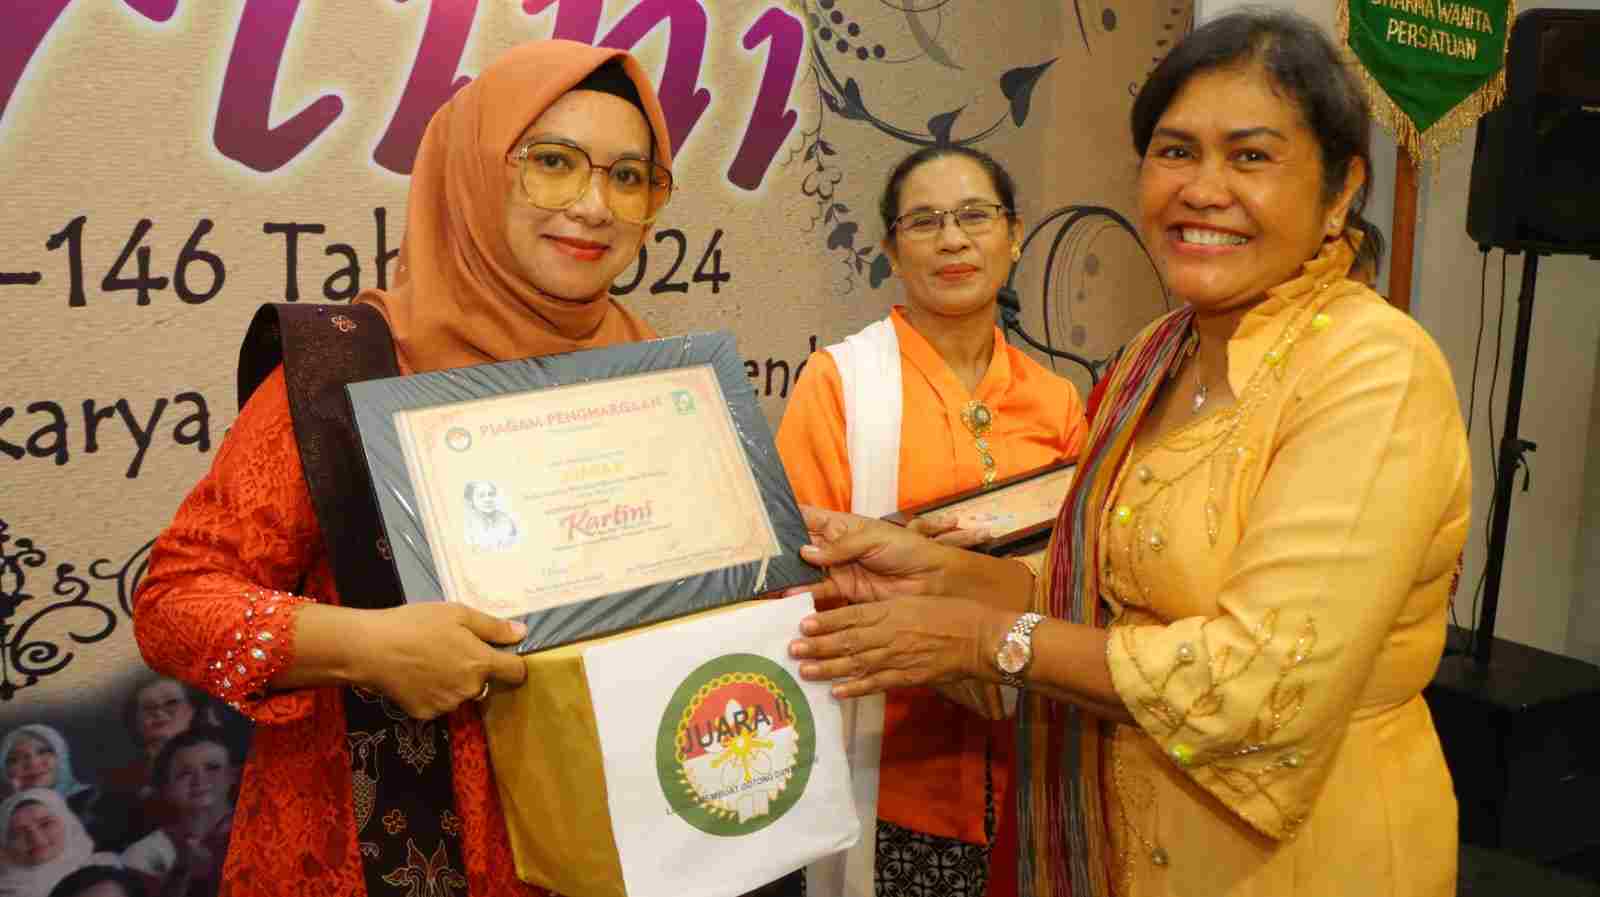 DWP Kabupaten Simalungun Peringati Hari Kartini Ke 146 Tahun 2024